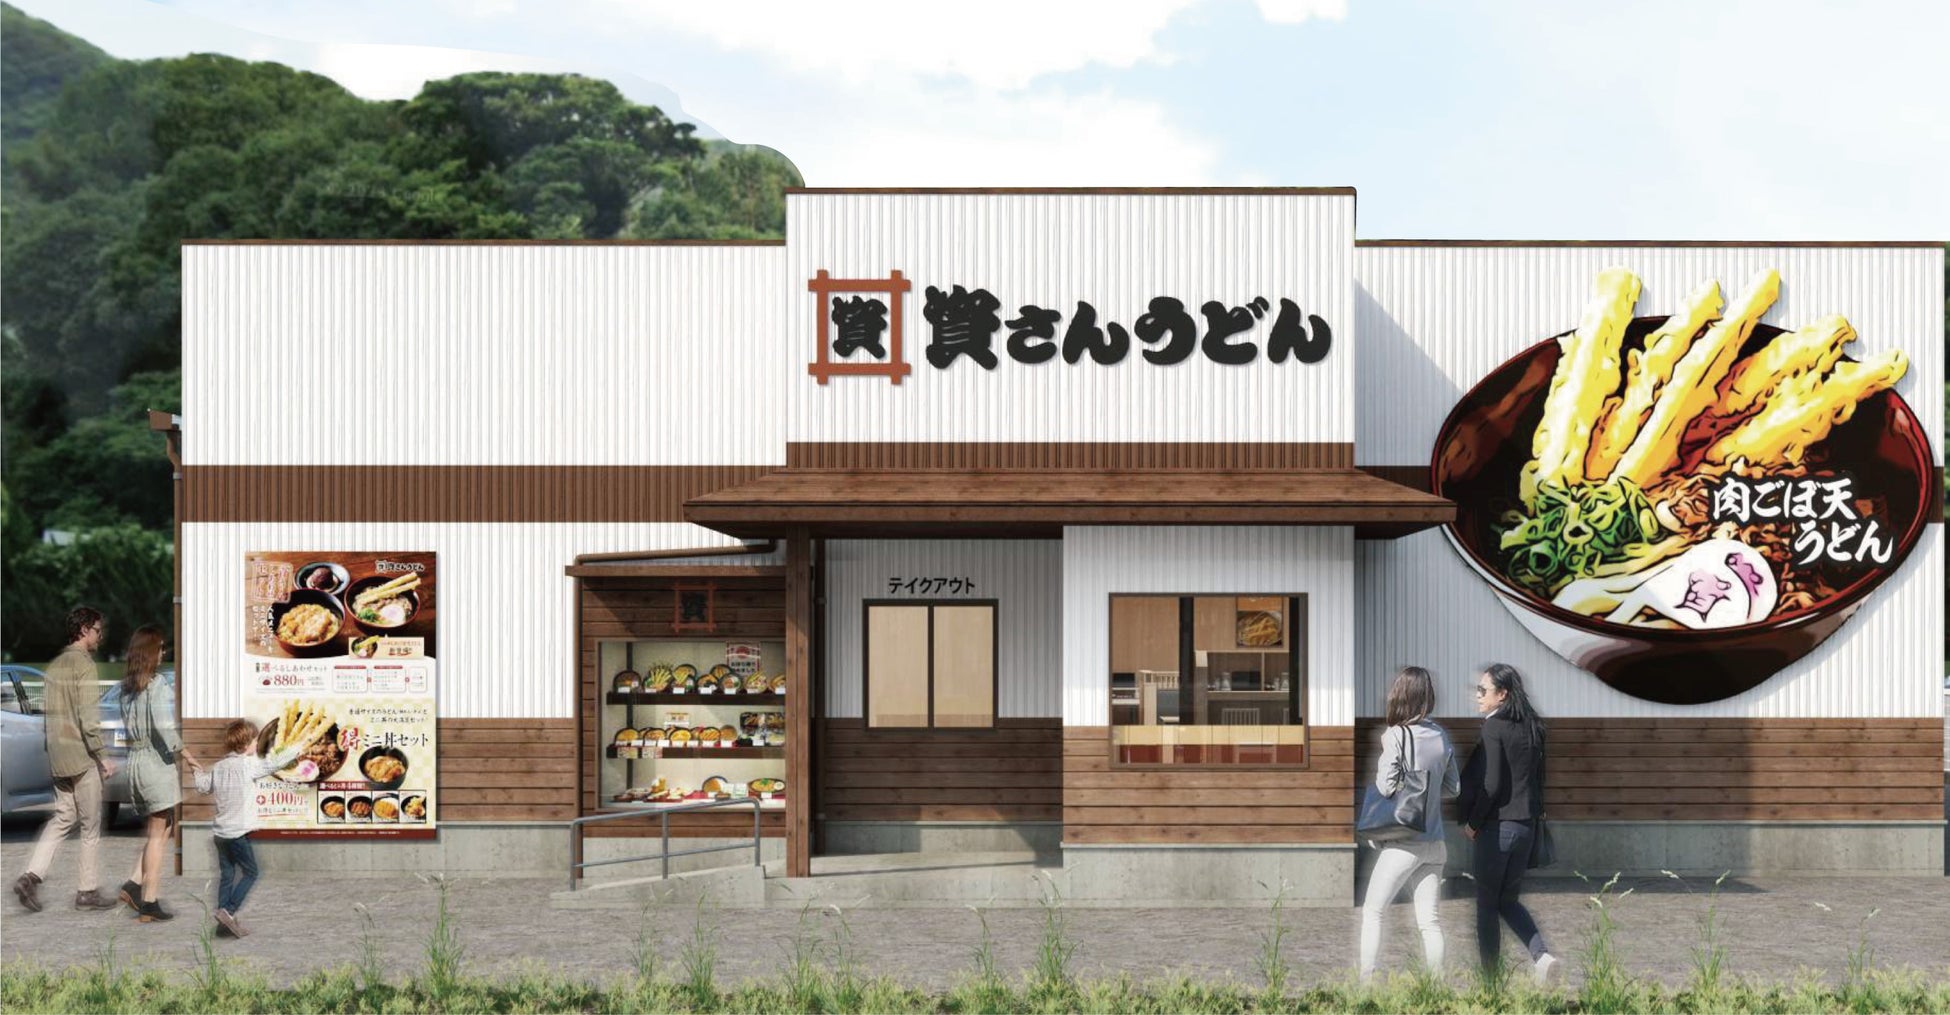 【丸源ラーメン】『丸源ラーメン 岩倉店』が2023年11⽉15日(水)に新装開店！